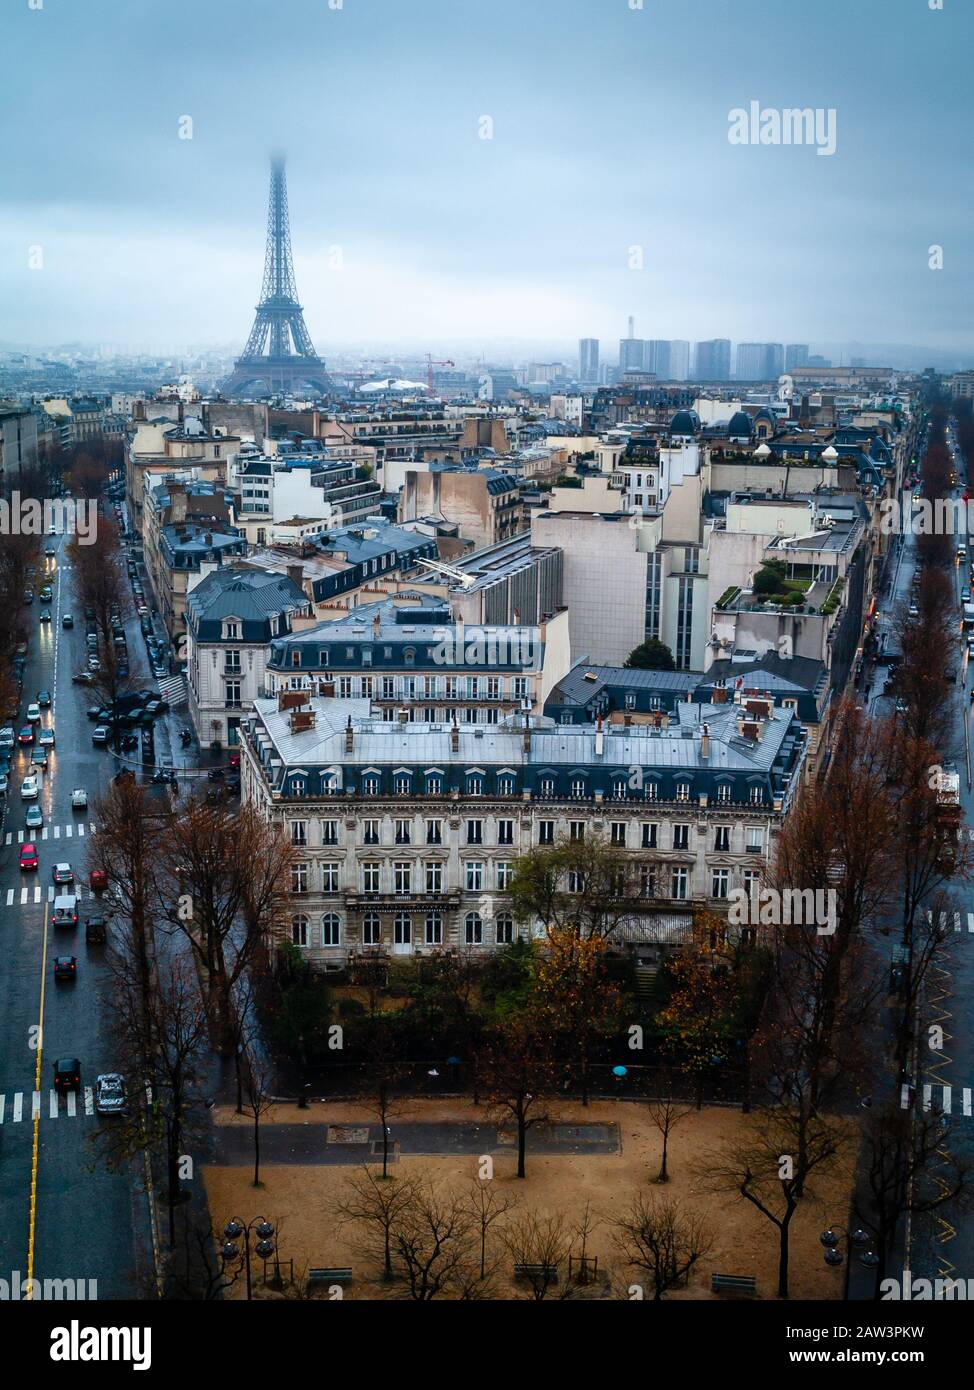 Paris, France, paysage urbain en soirée d'hiver, vue sur la tour Eiffel, depuis le sommet de l'Arc de Triomphe (Arc de Triomphe). Scène aérienne de la ville. Banque D'Images